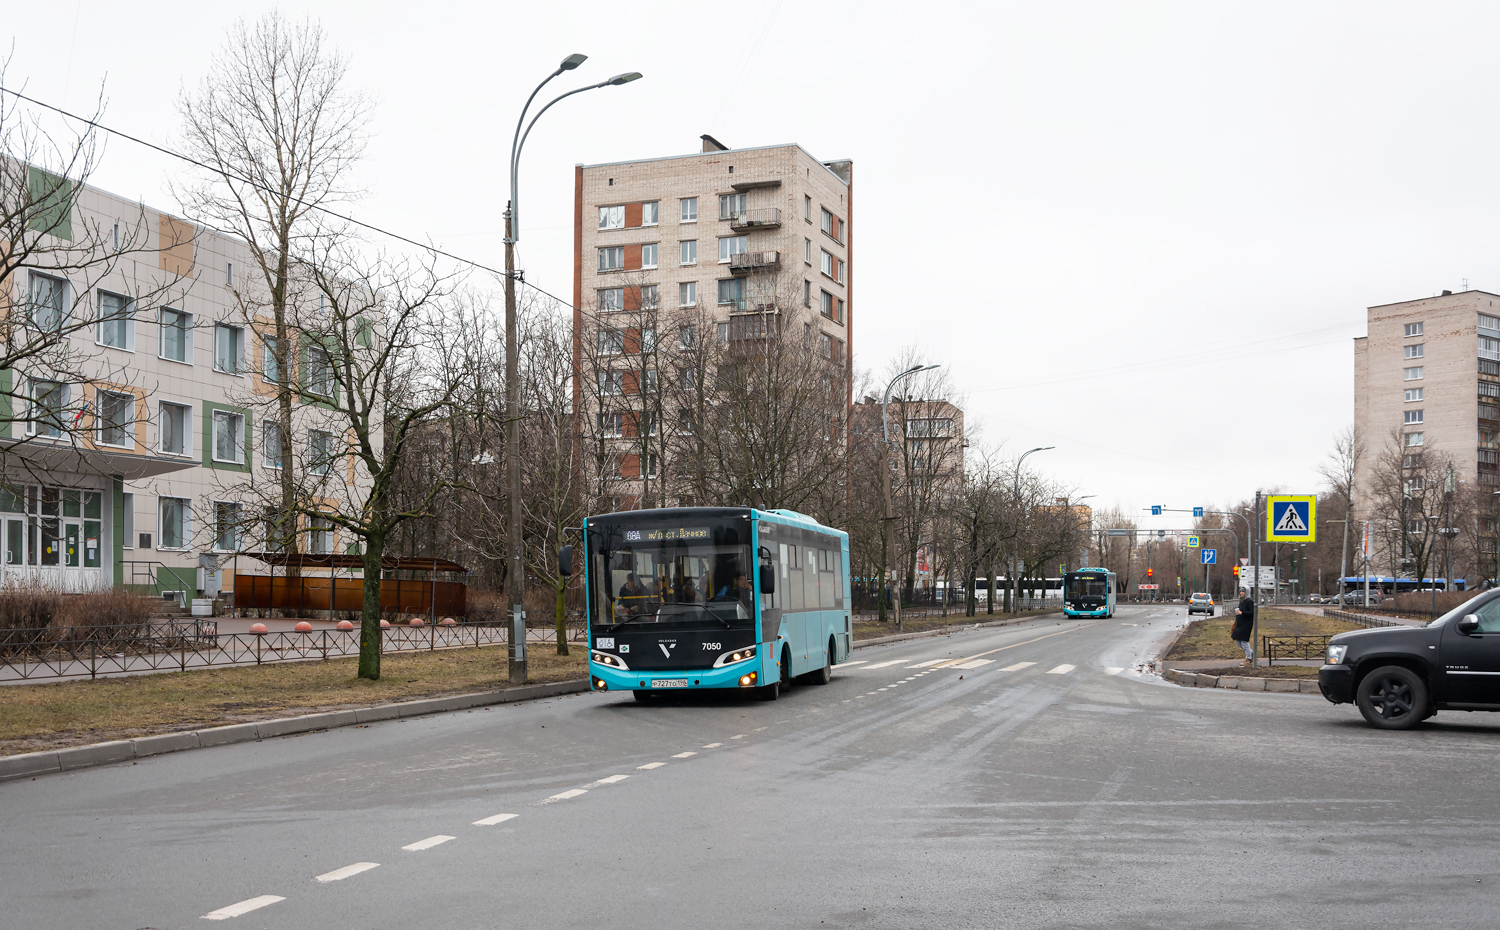 Saint-Pétersbourg, Volgabus-4298.G4 (LNG) # 7050